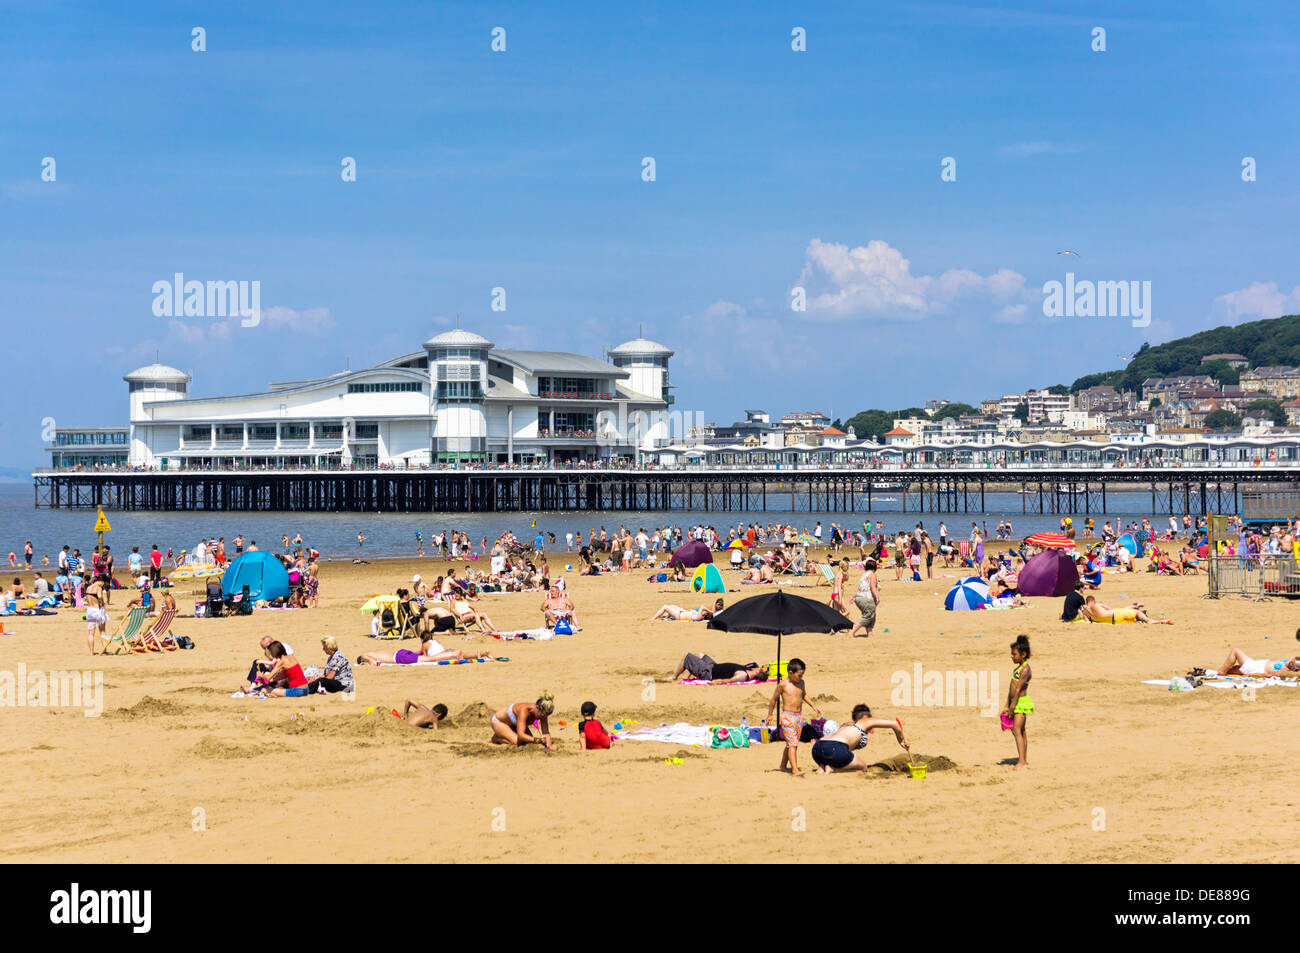 Tradicional Británico - Grand Seaside Beach Pier y la playa en Weston-Super-Mare, Somerset, Inglaterra, Reino Unido en temporada alta Foto de stock